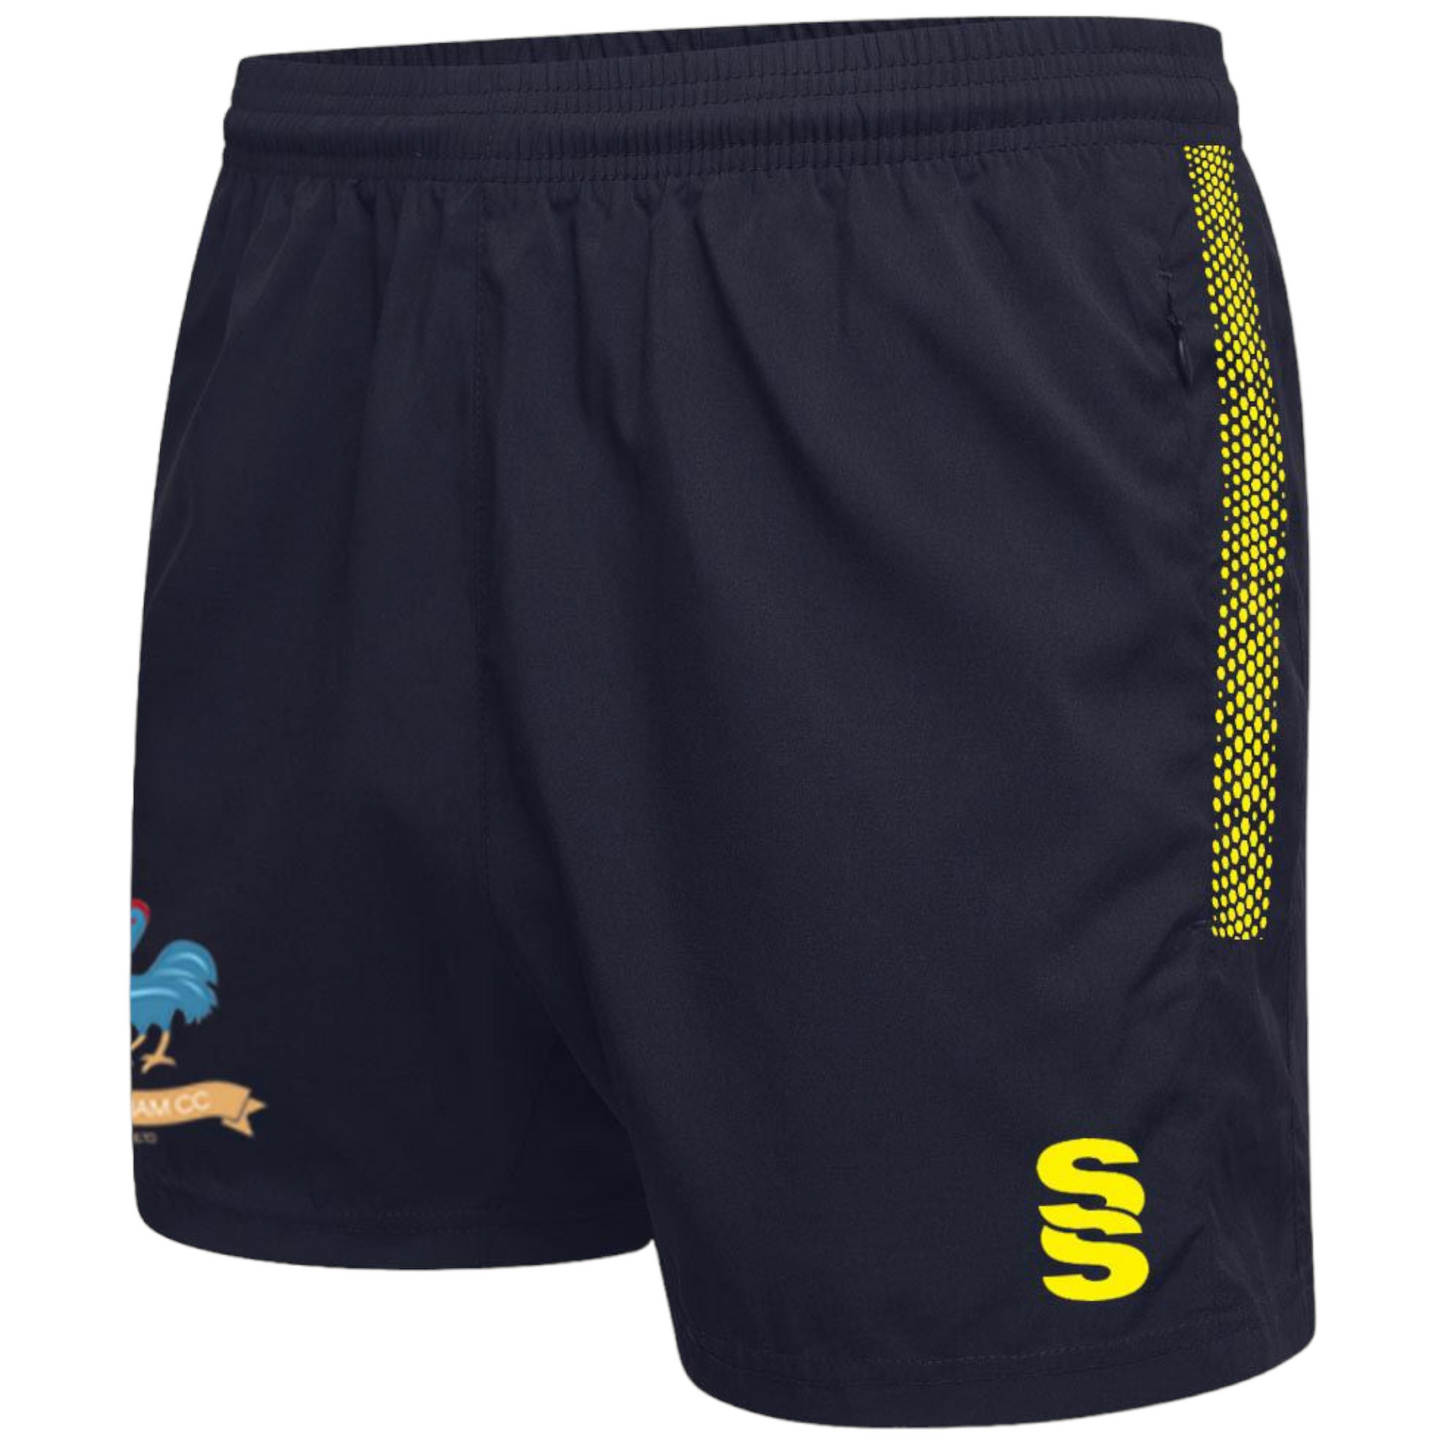 Flintham CC Dual Gym Shorts